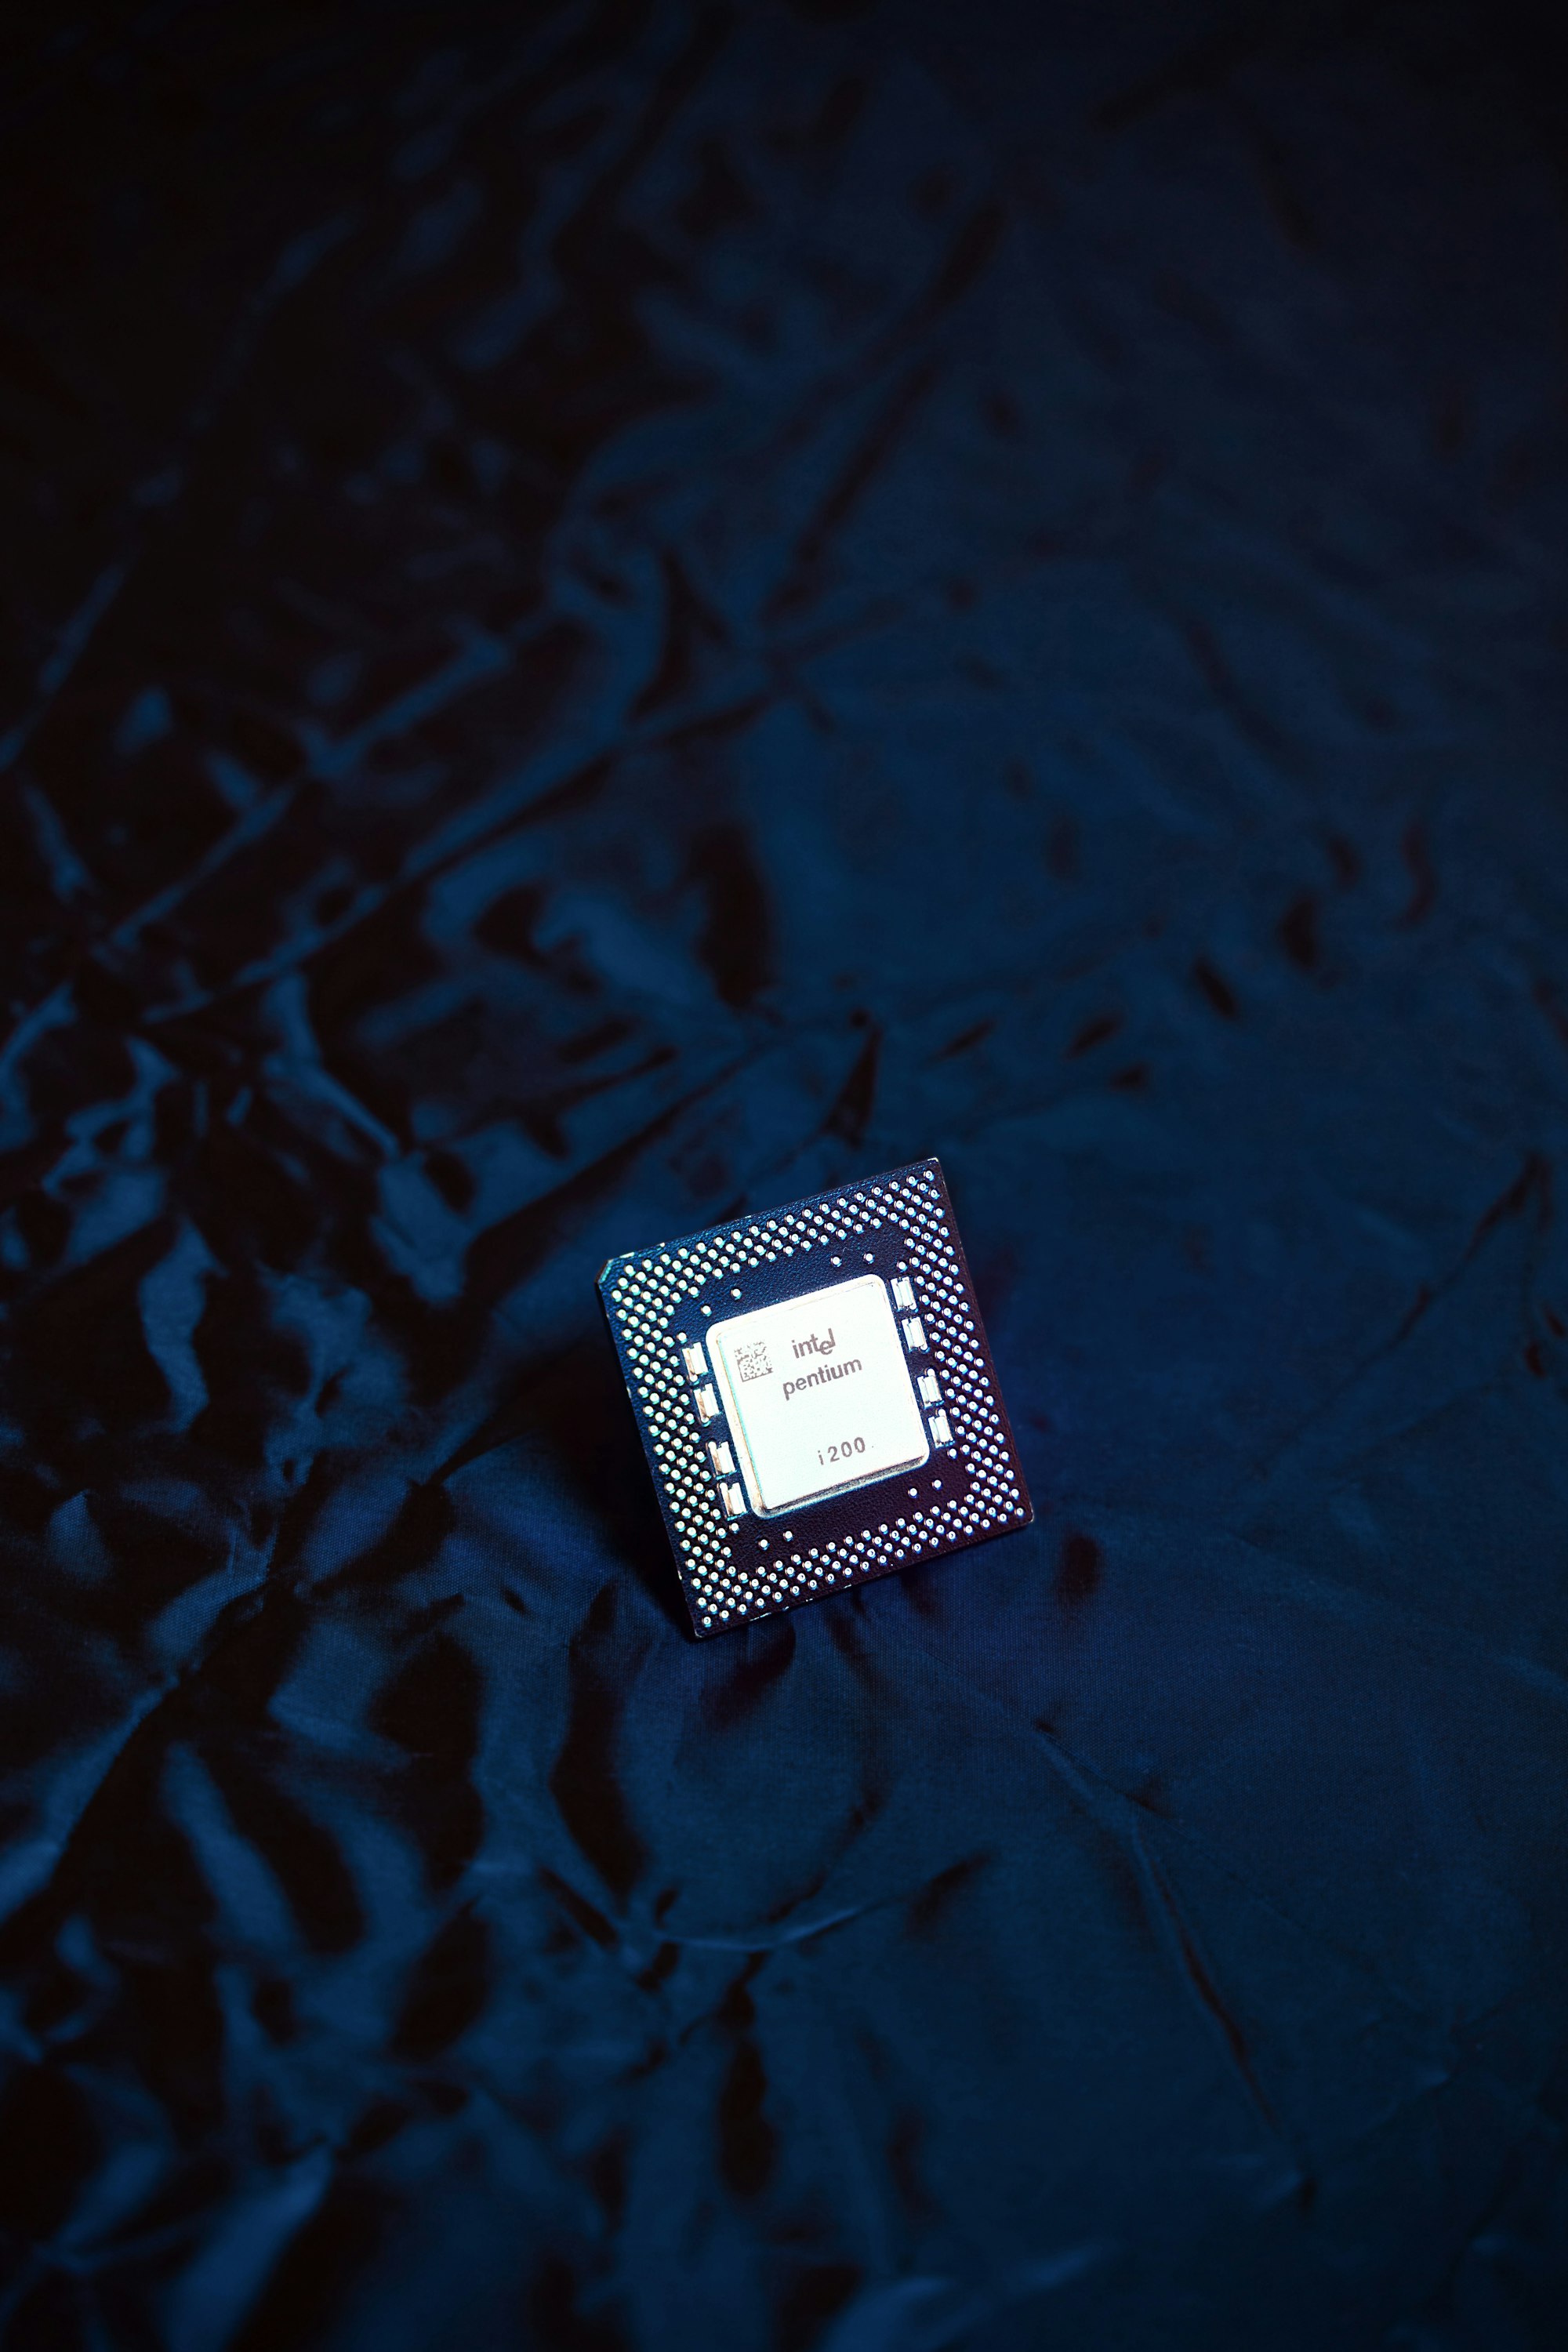 Intel Pentium i200